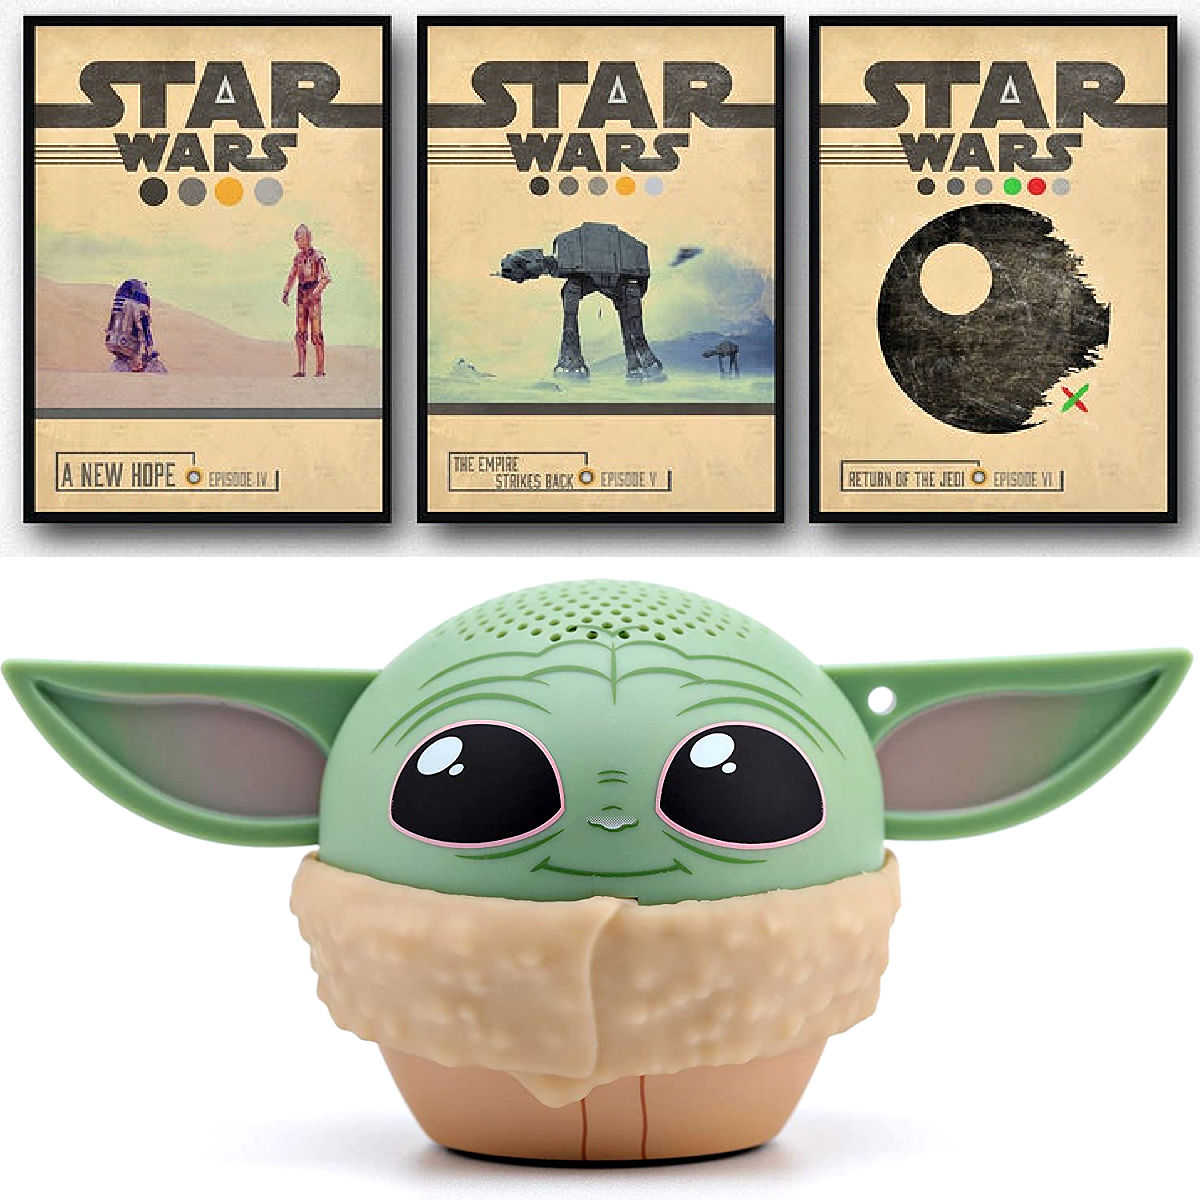 https://www.abbottsathome.com/wp-content/uploads/2021/12/Cool-Star-Wars-Gift-Ideas-for-Family-6.jpg